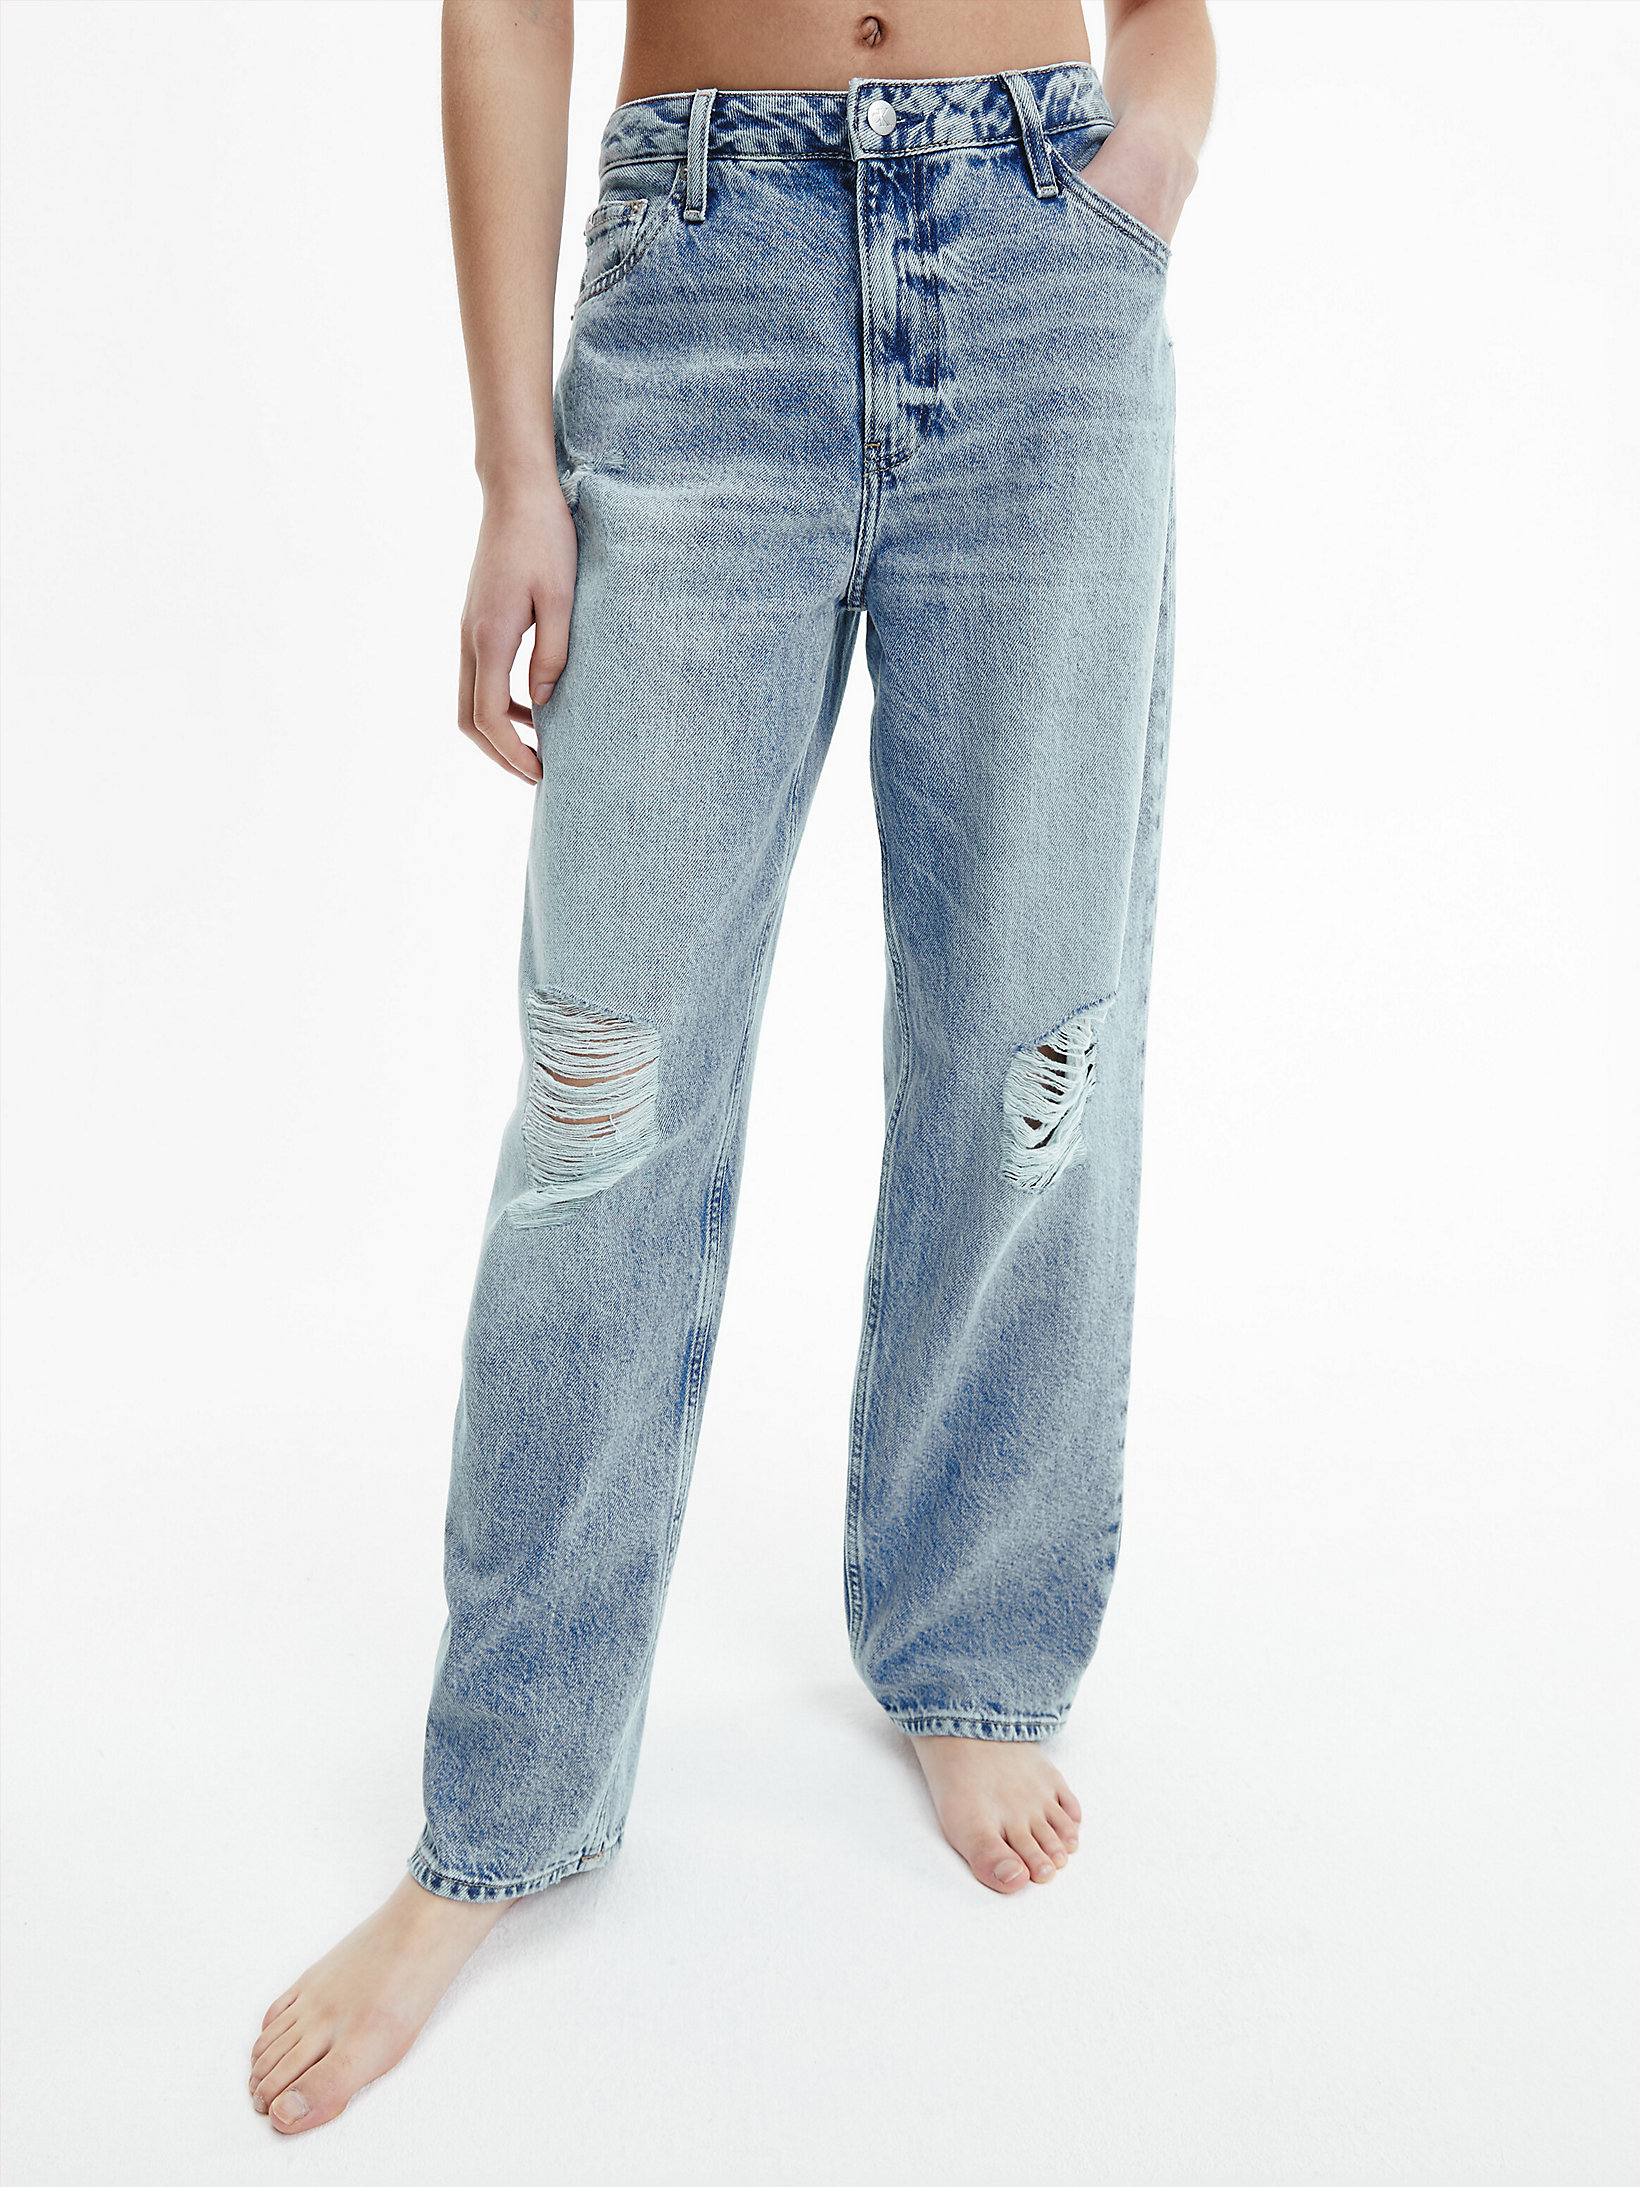 Jeans Straight Estilo Años 90 > Denim Light > undefined mujer > Calvin Klein